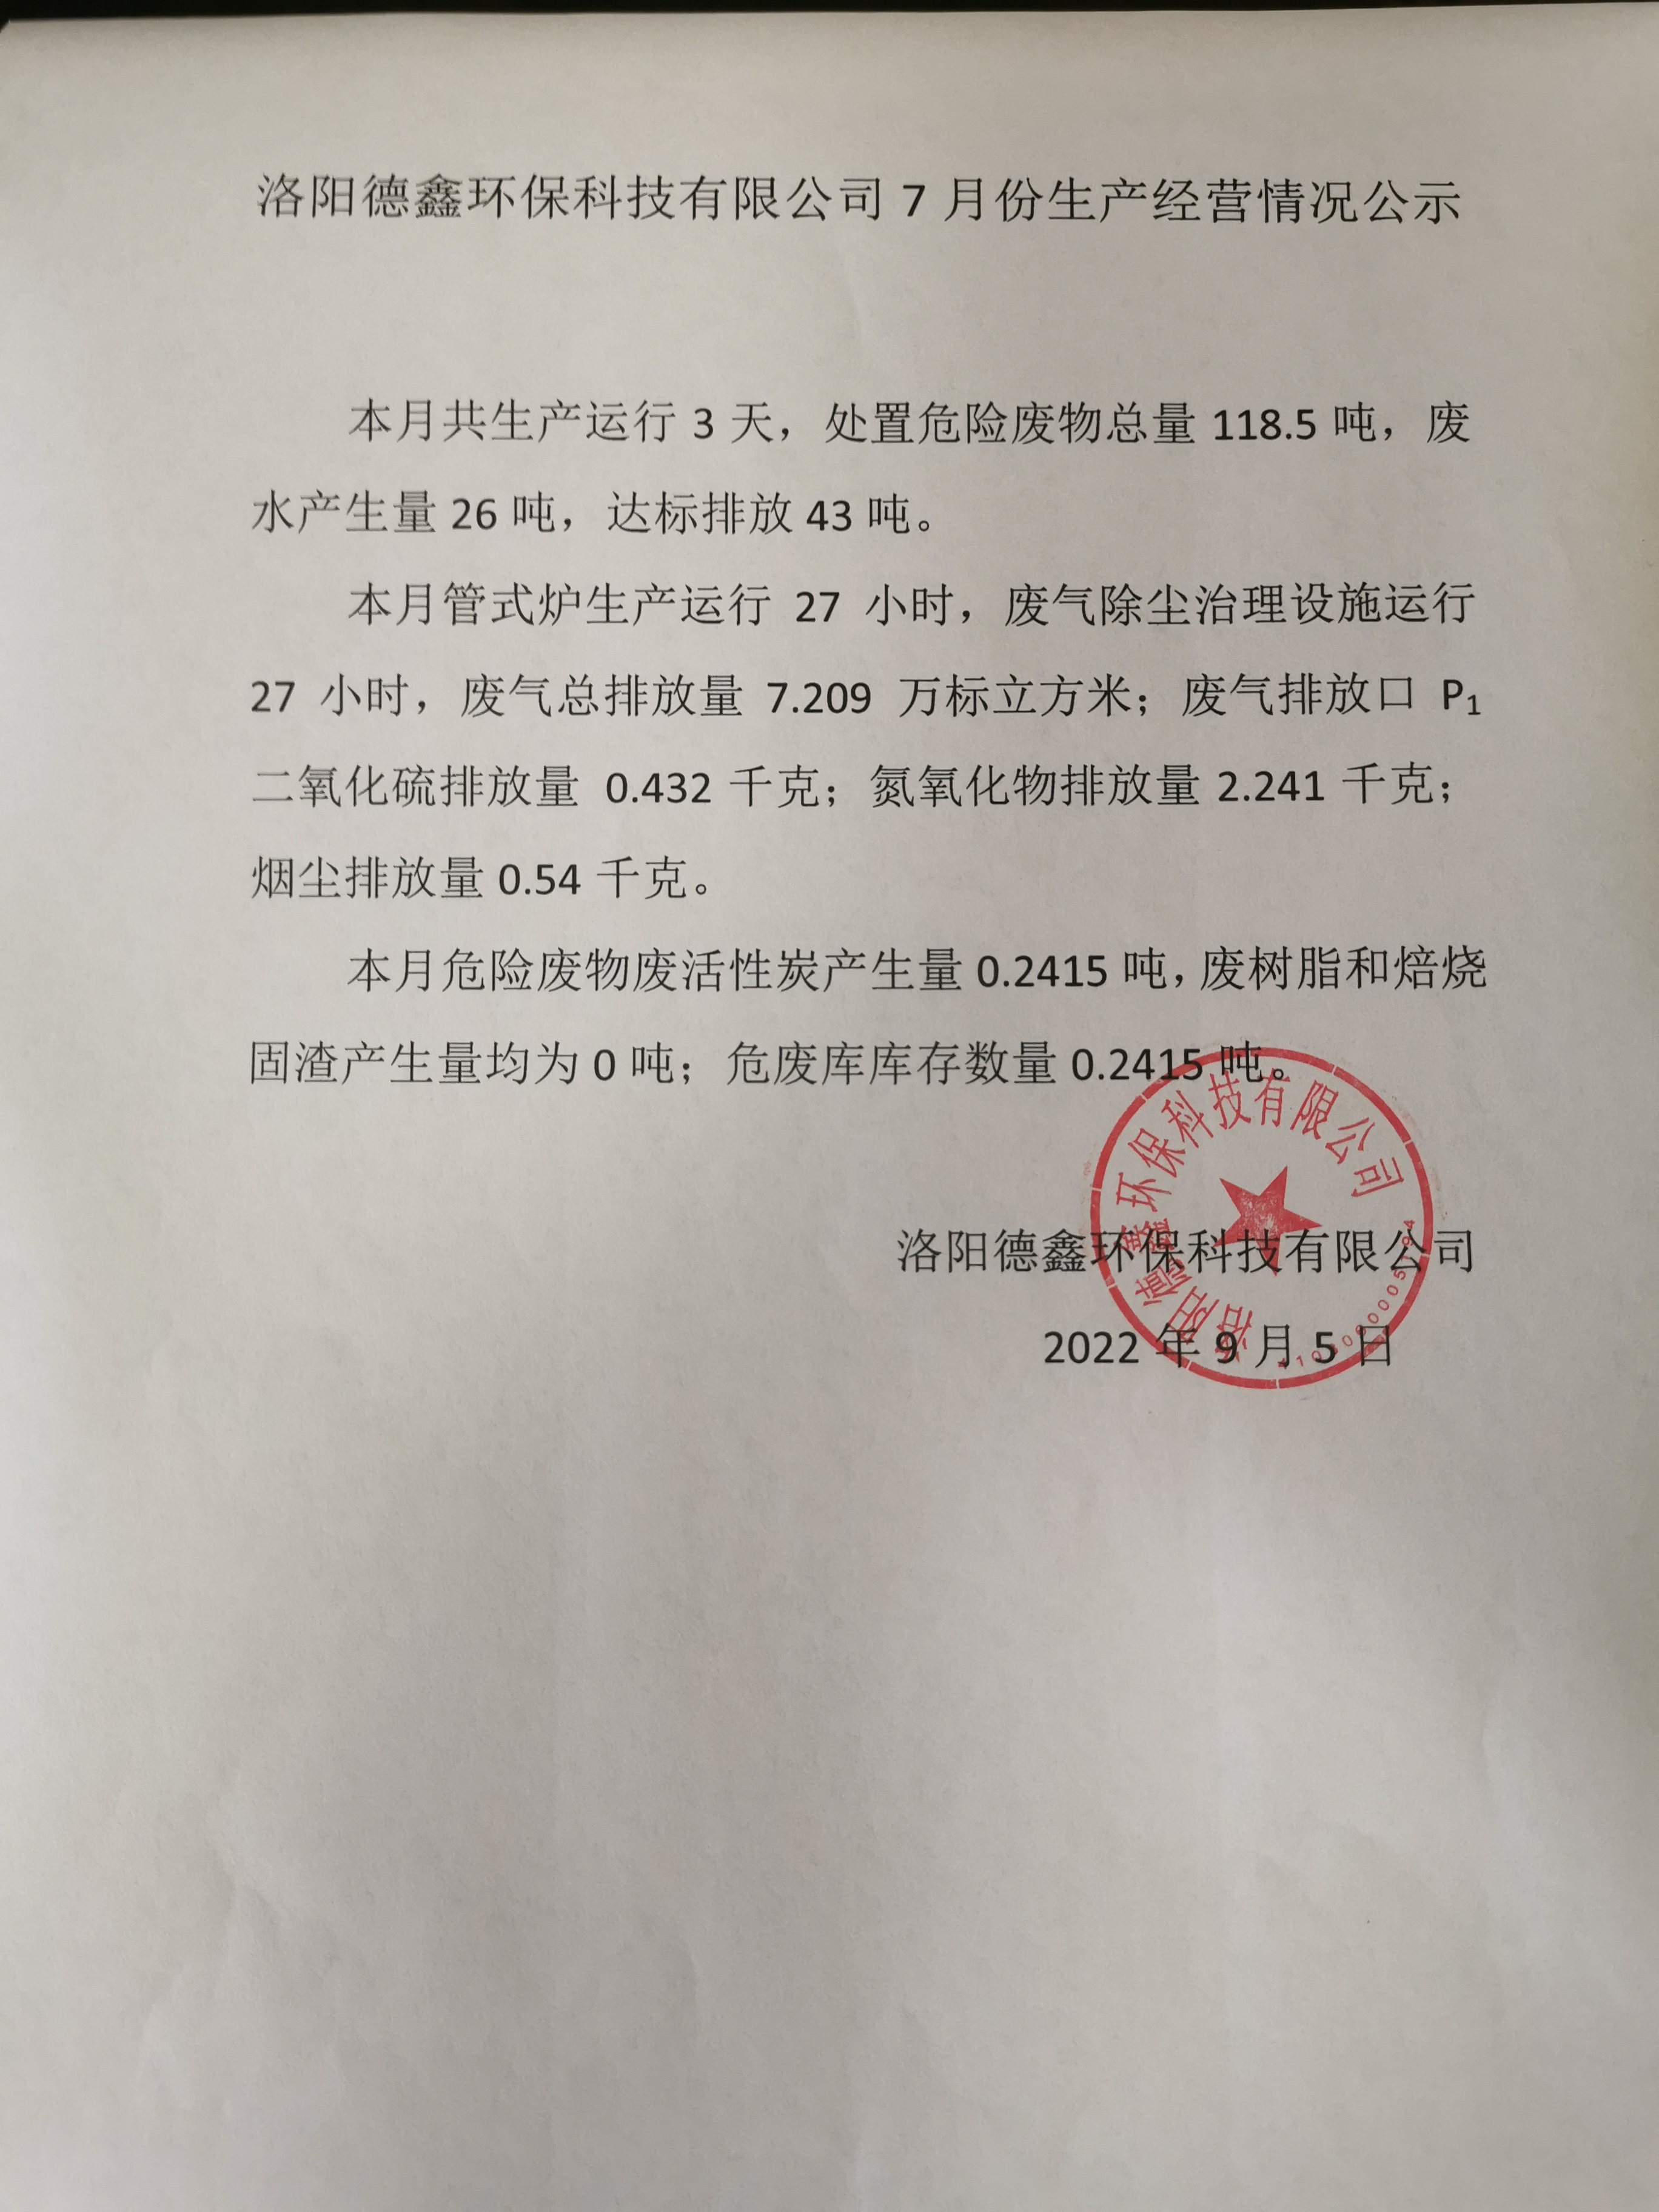 洛阳德鑫环保科技有限公司7月份生产经营情况公示